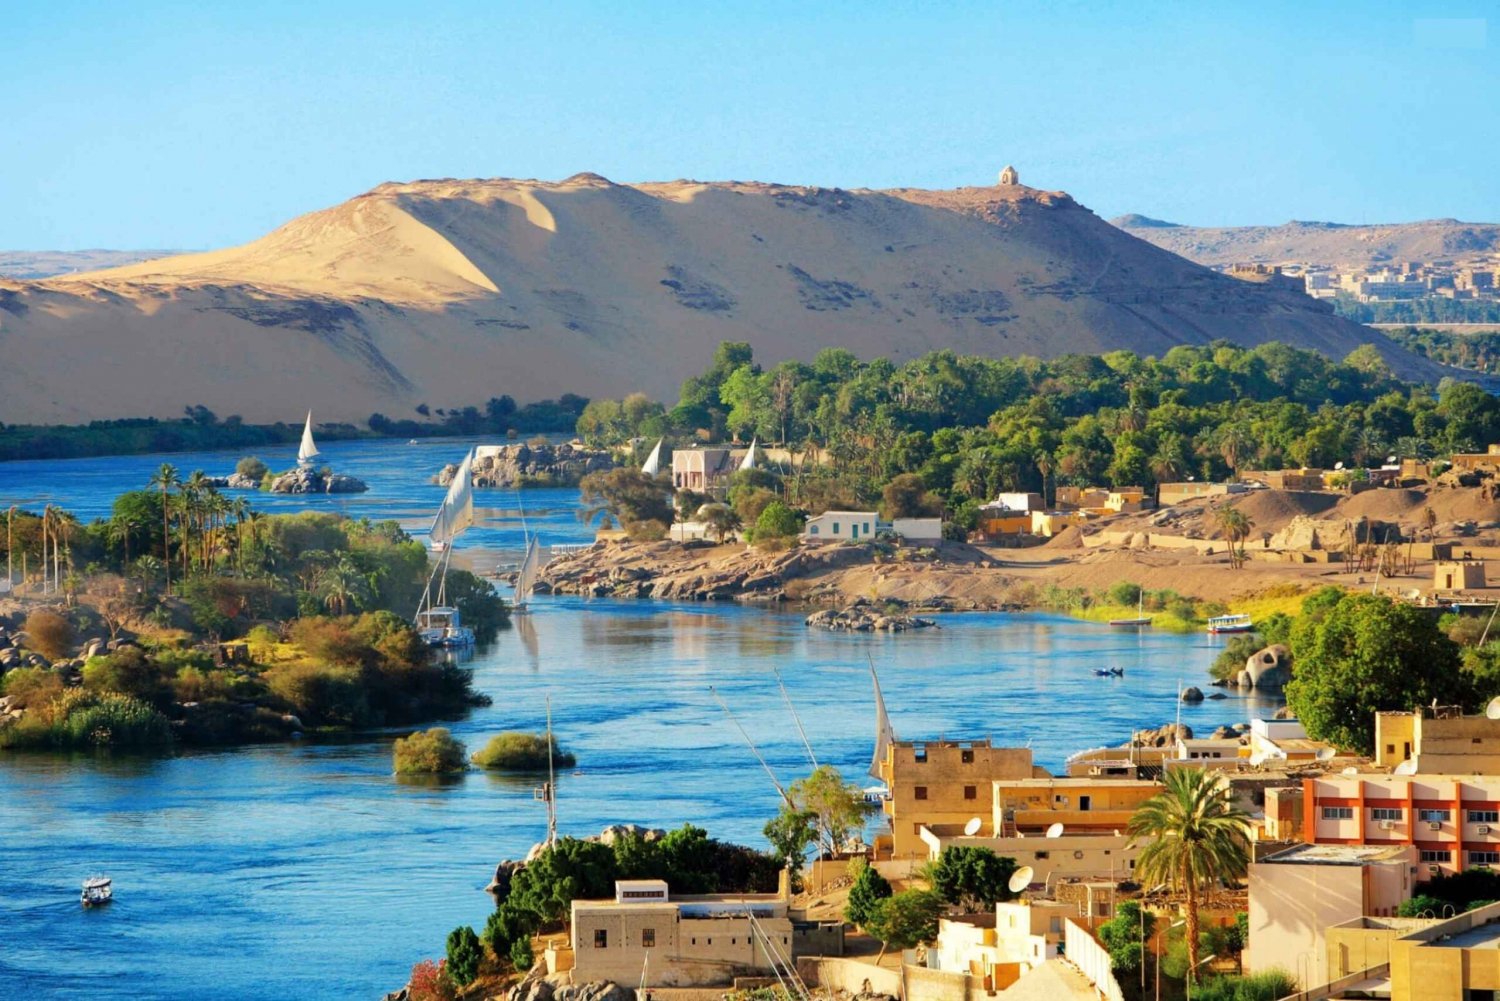 El Cairo y el Nilo: 7 días de hotel y crucero en avión